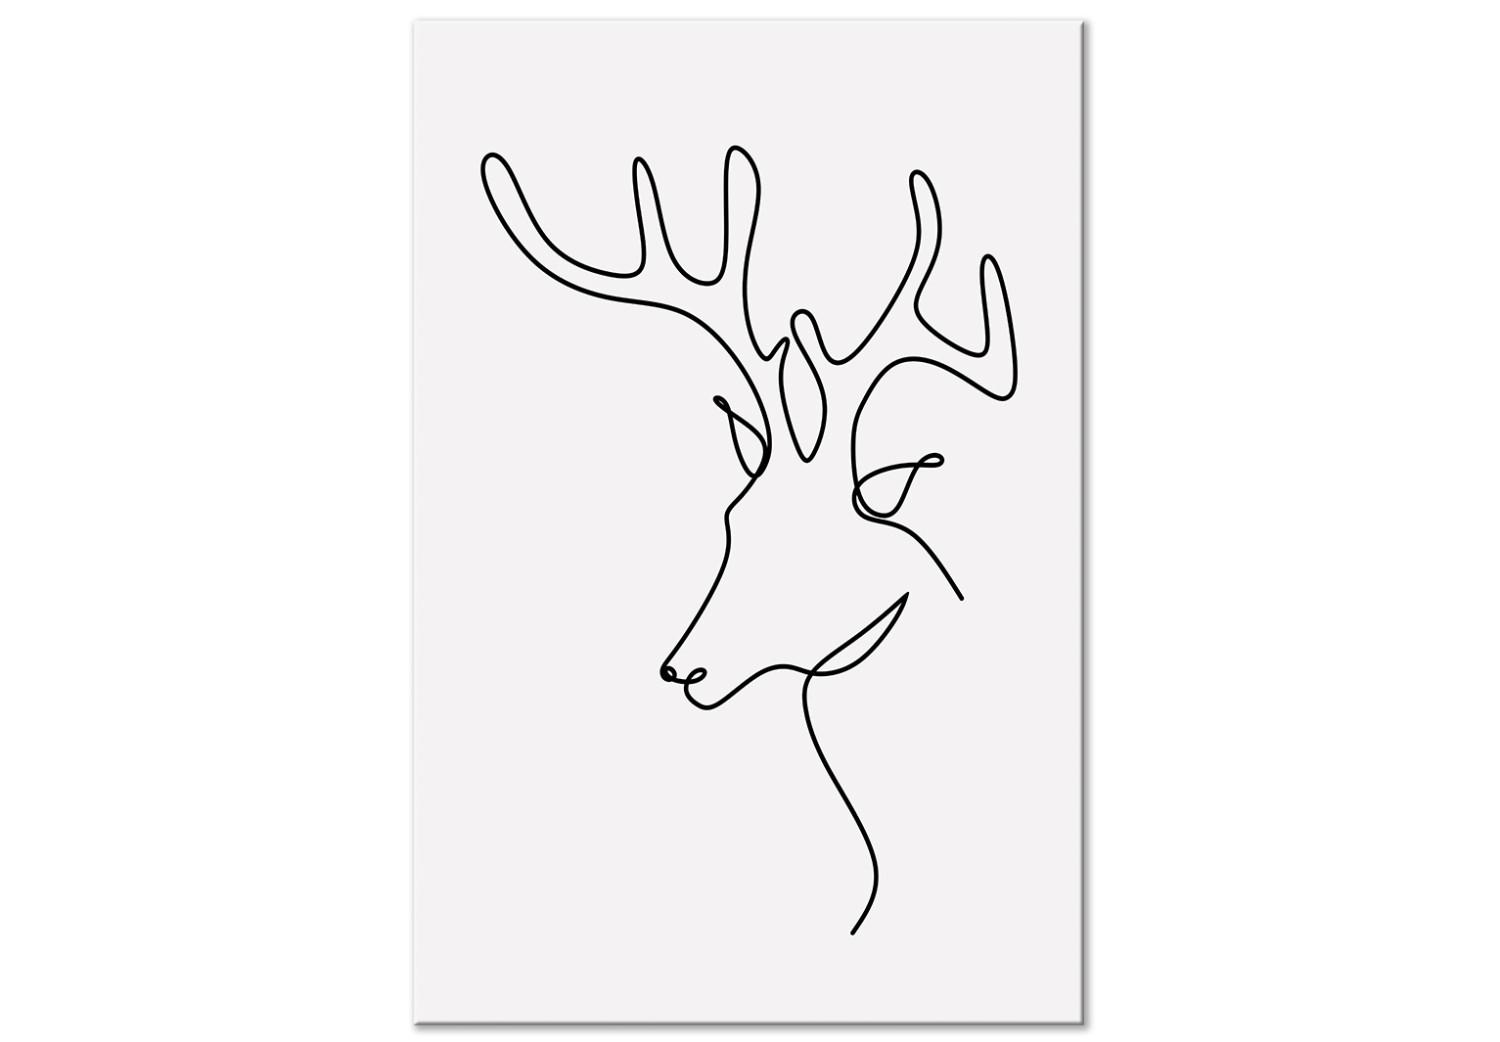 Cuadro moderno Perfil de ciervo - abstracción en blanco y negro estilo de arte lineal